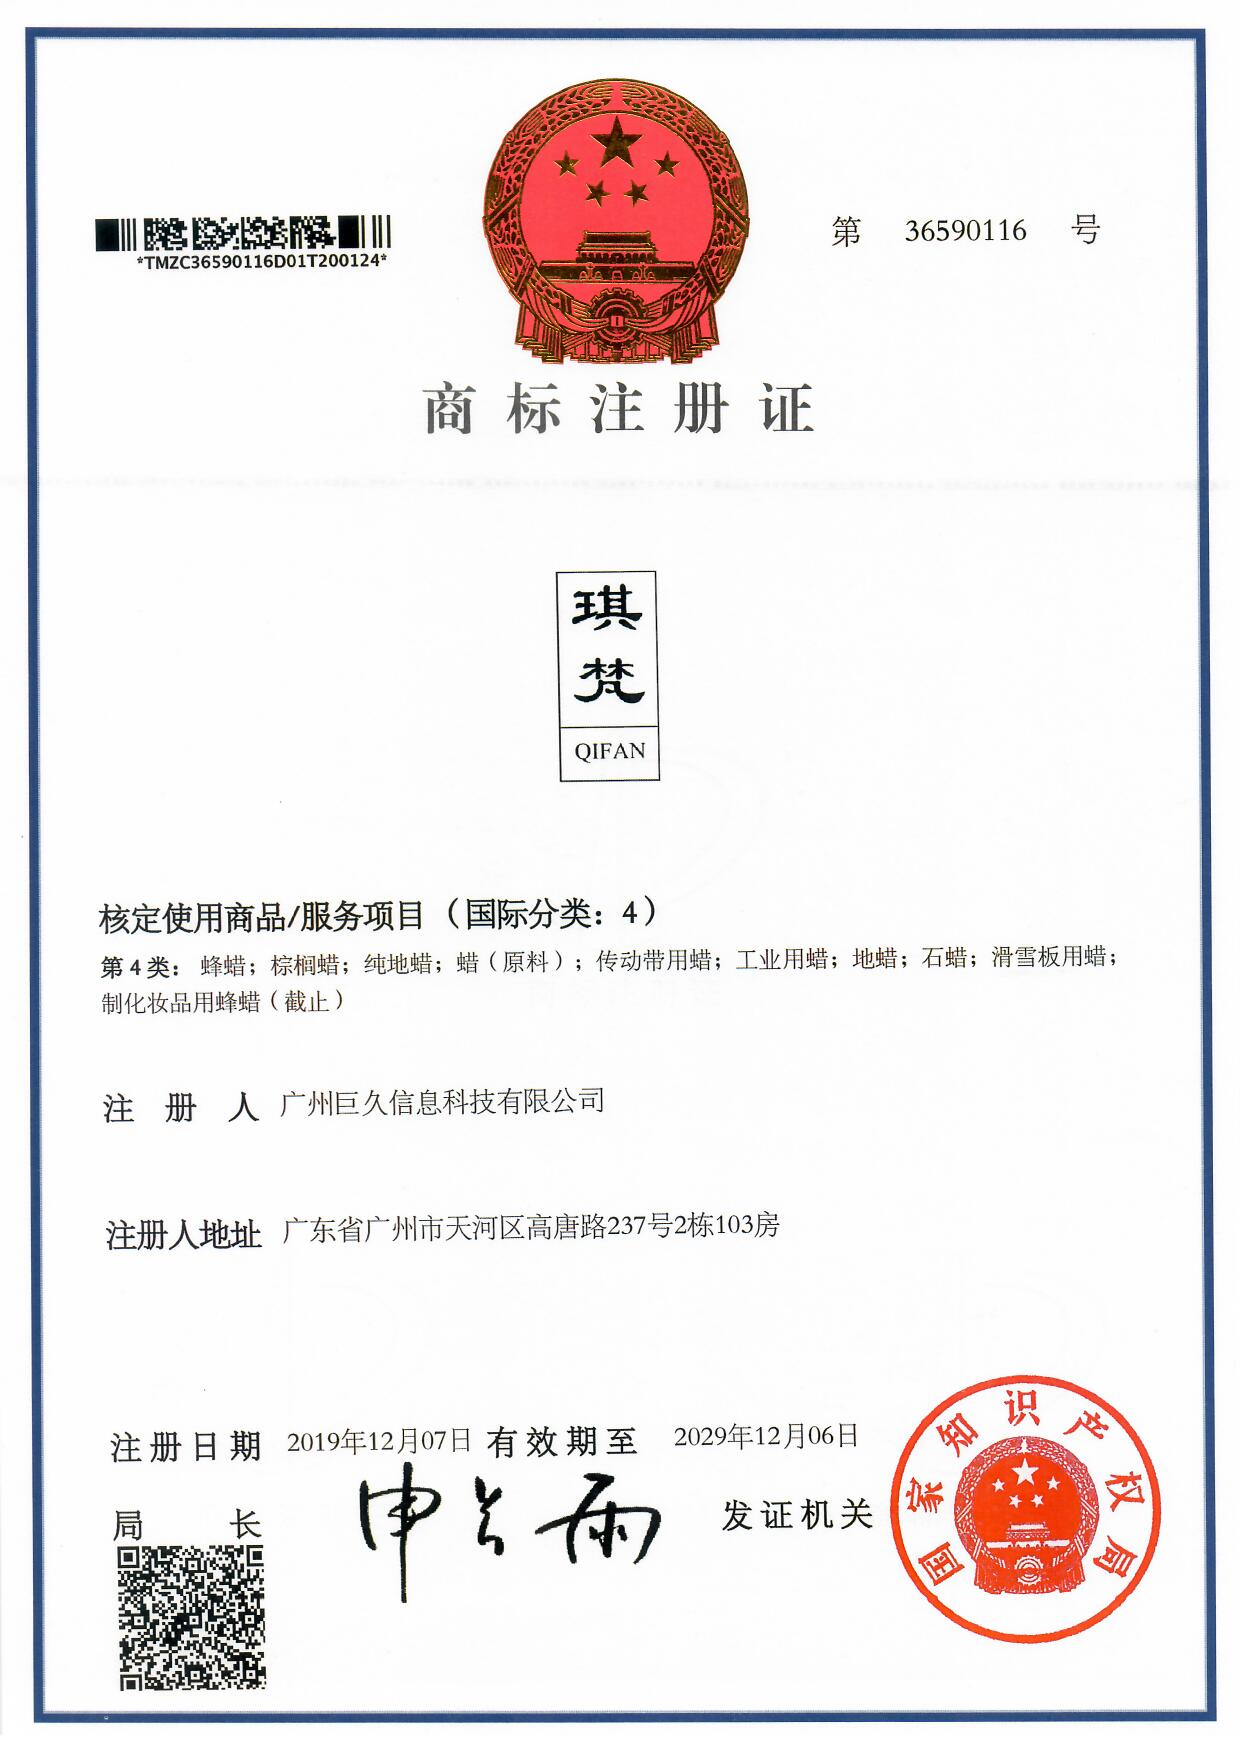 广州巨久信息科技有限公司商标证书36590116.jpg